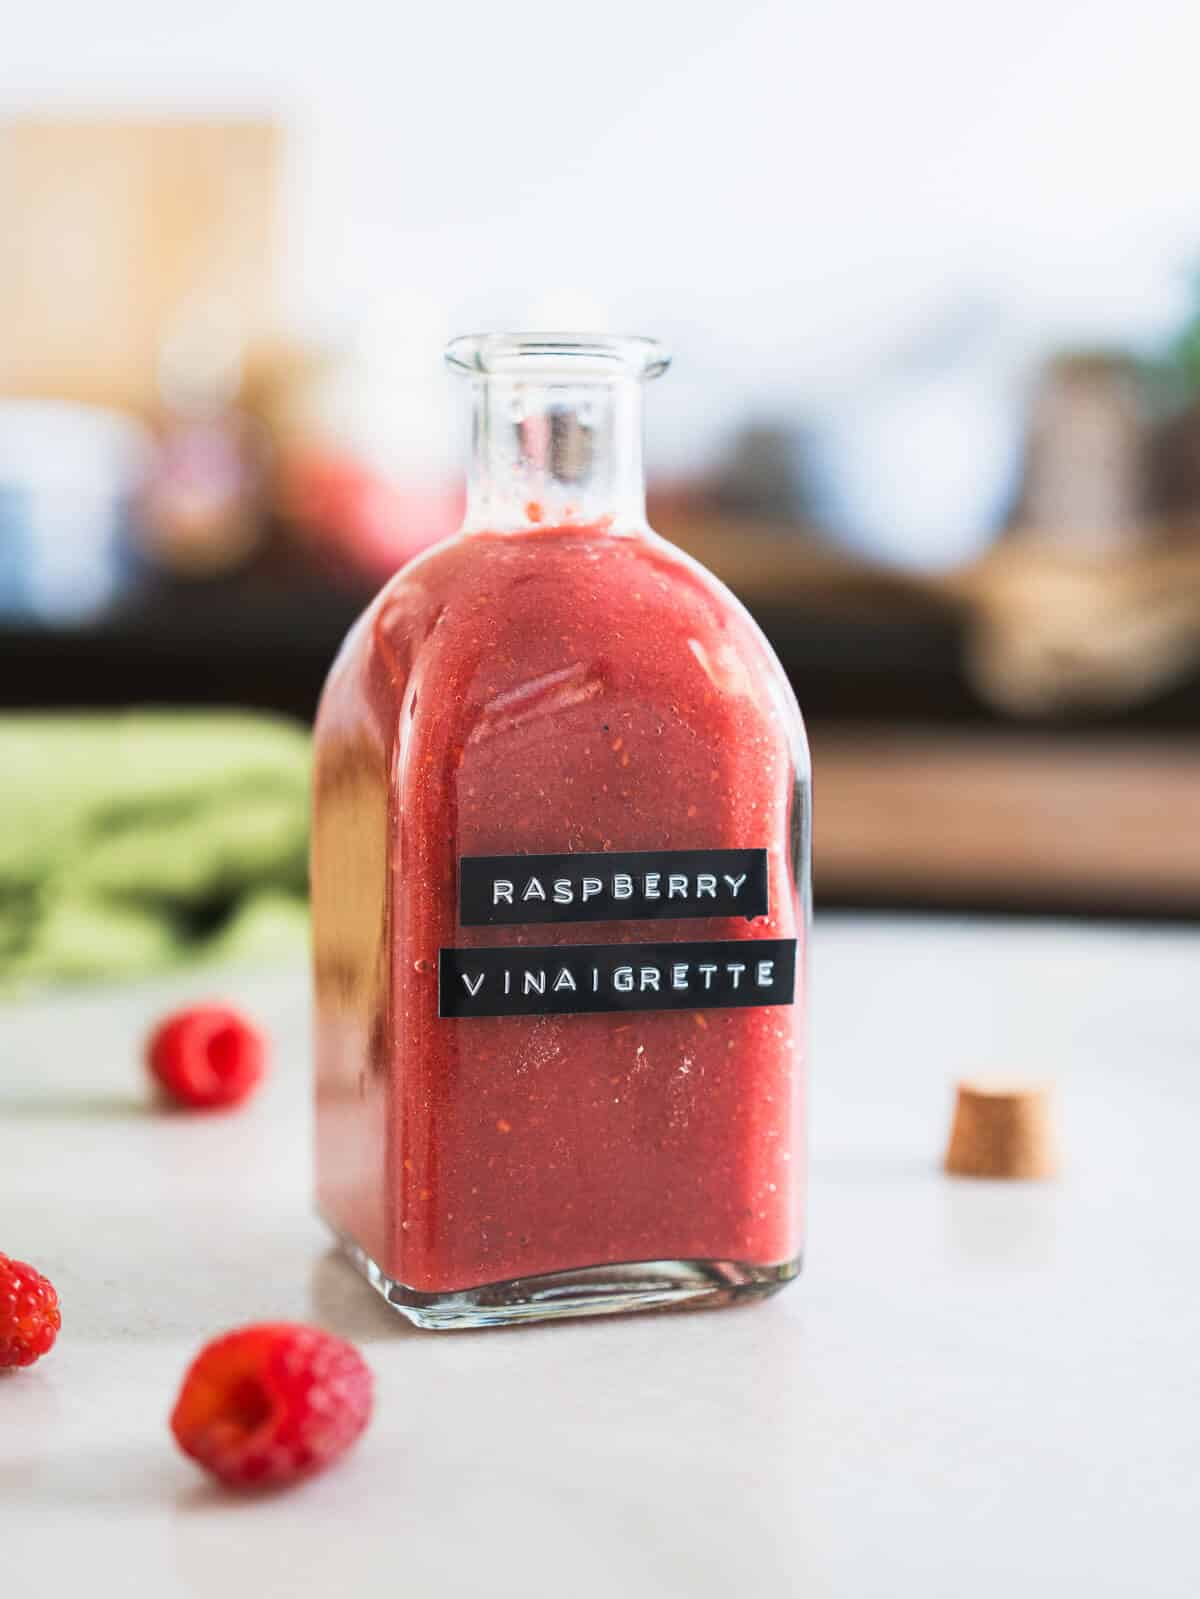 balsamic raspberry dressing bottled in a glass bottle.